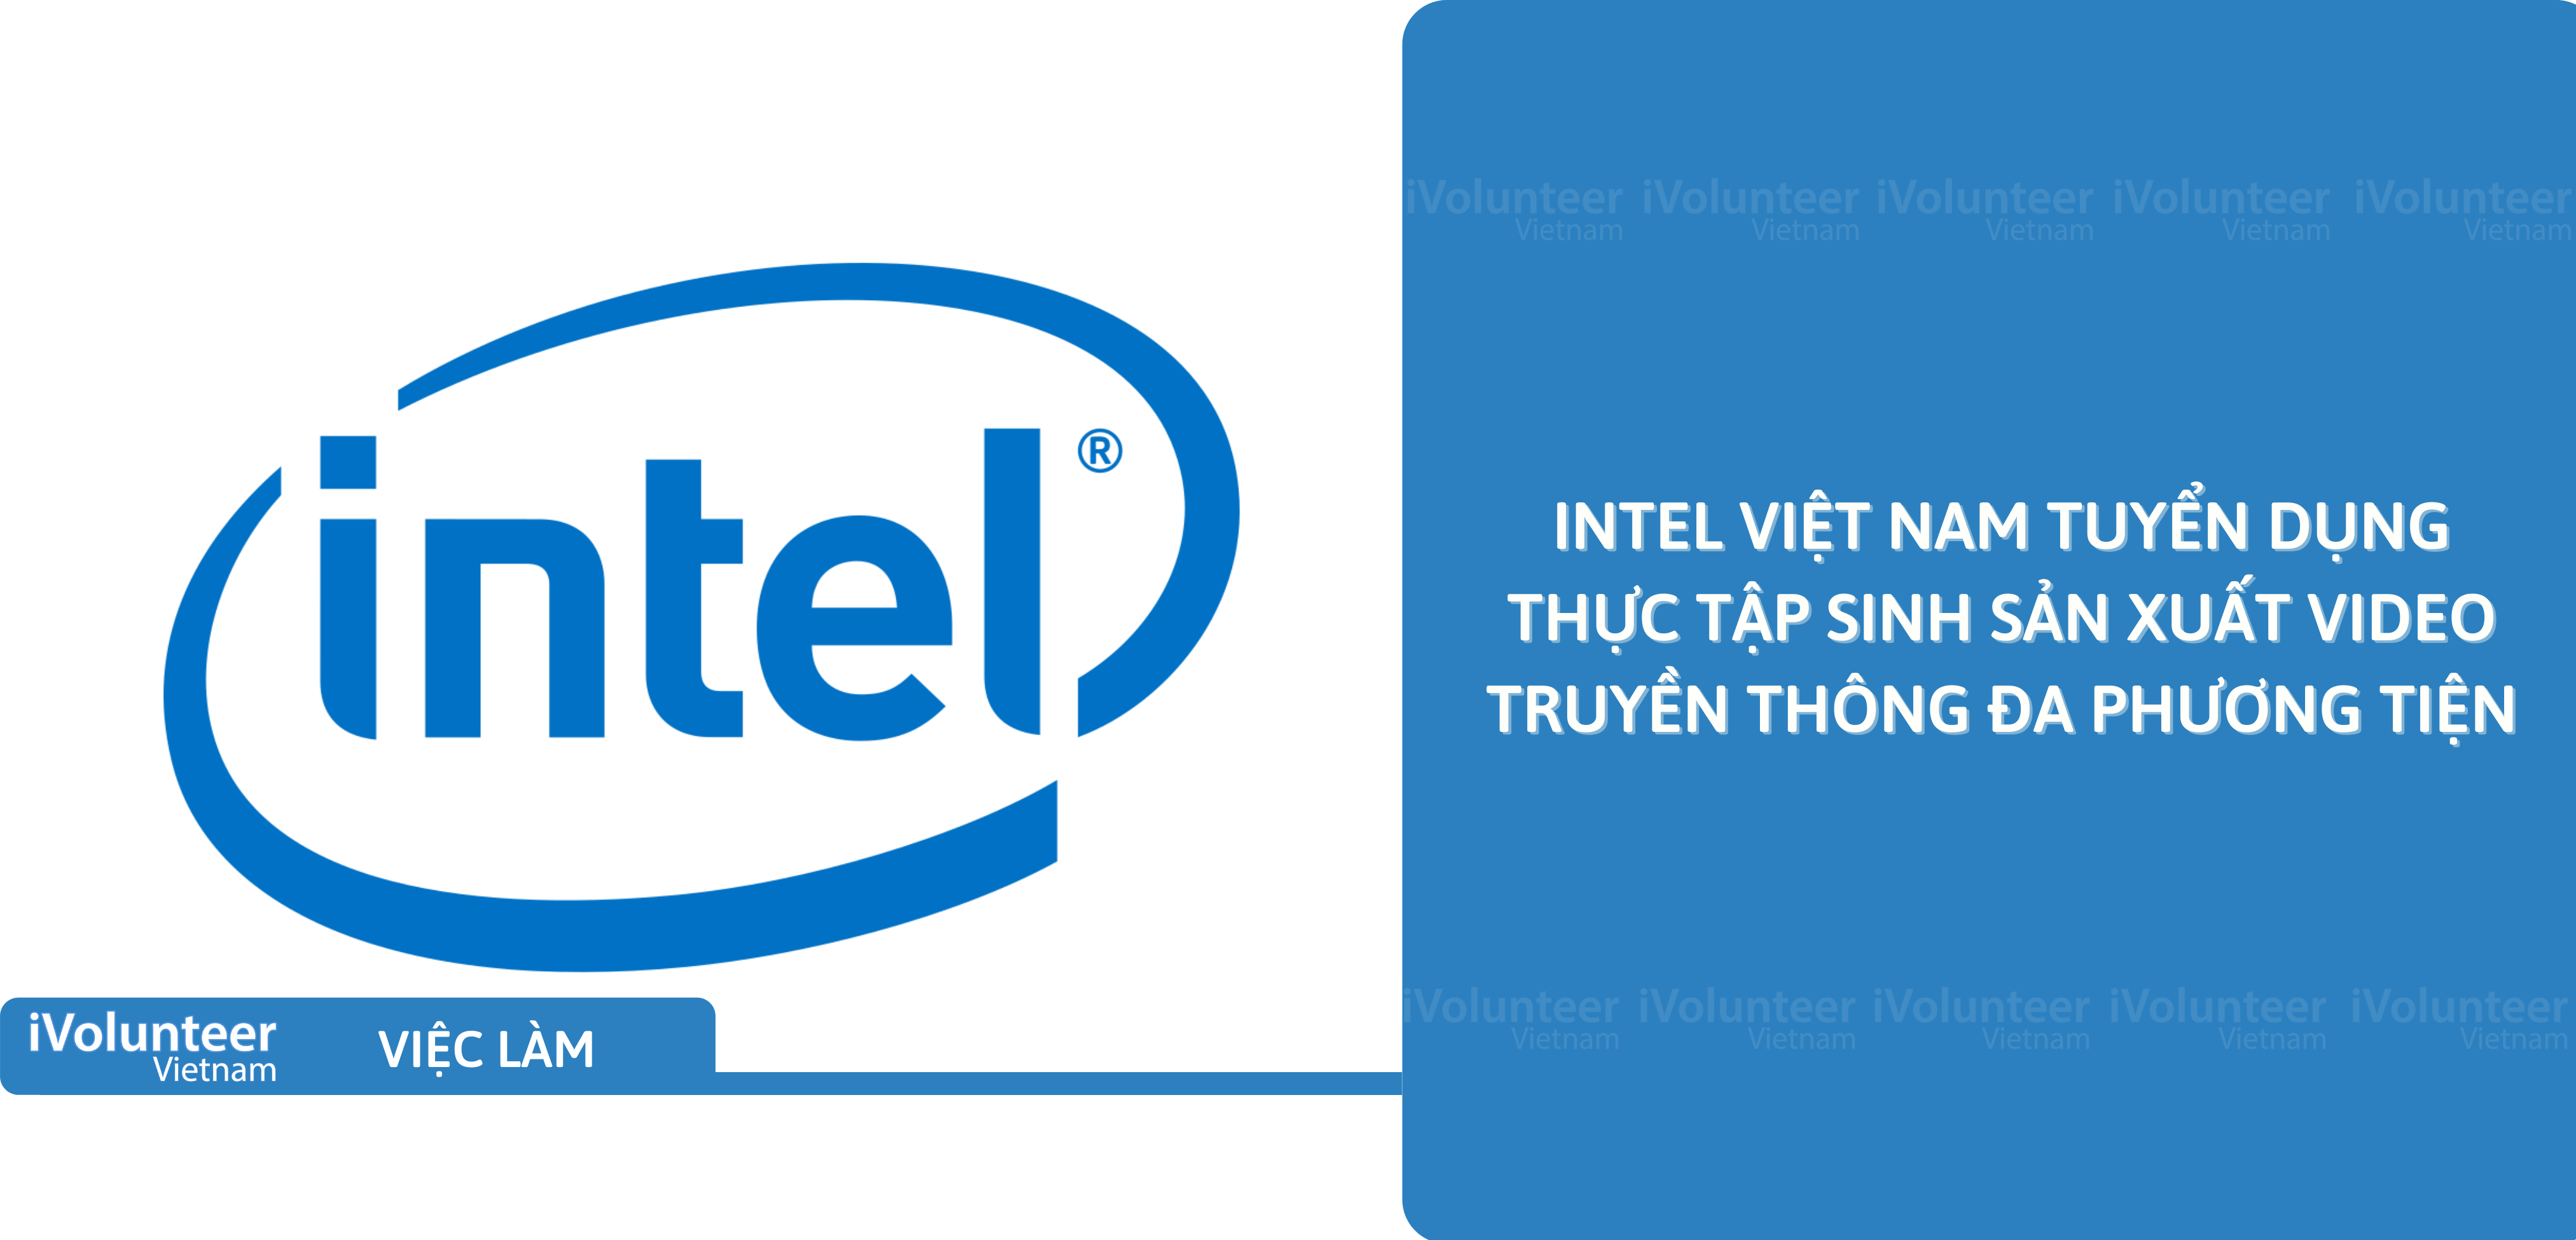 [TP.HCM] Intel Việt Nam Tuyển Dụng Thực Tập Sinh Sản Xuất Video Truyền Thông Đa Phương Tiện